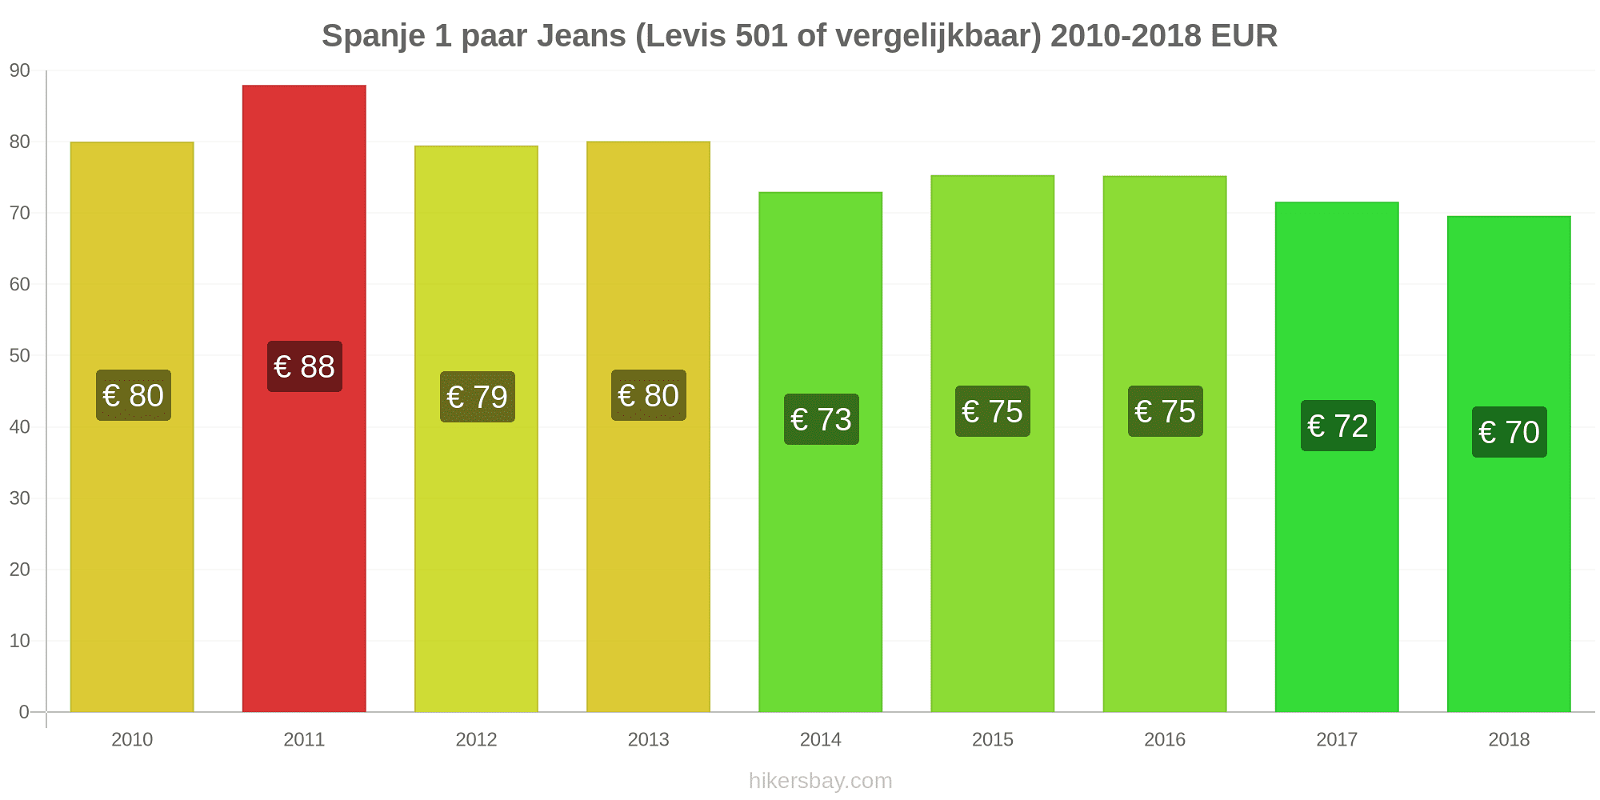 Spanje prijswijzigingen 1 paar jeans (Levis 501 of vergelijkbaar) hikersbay.com